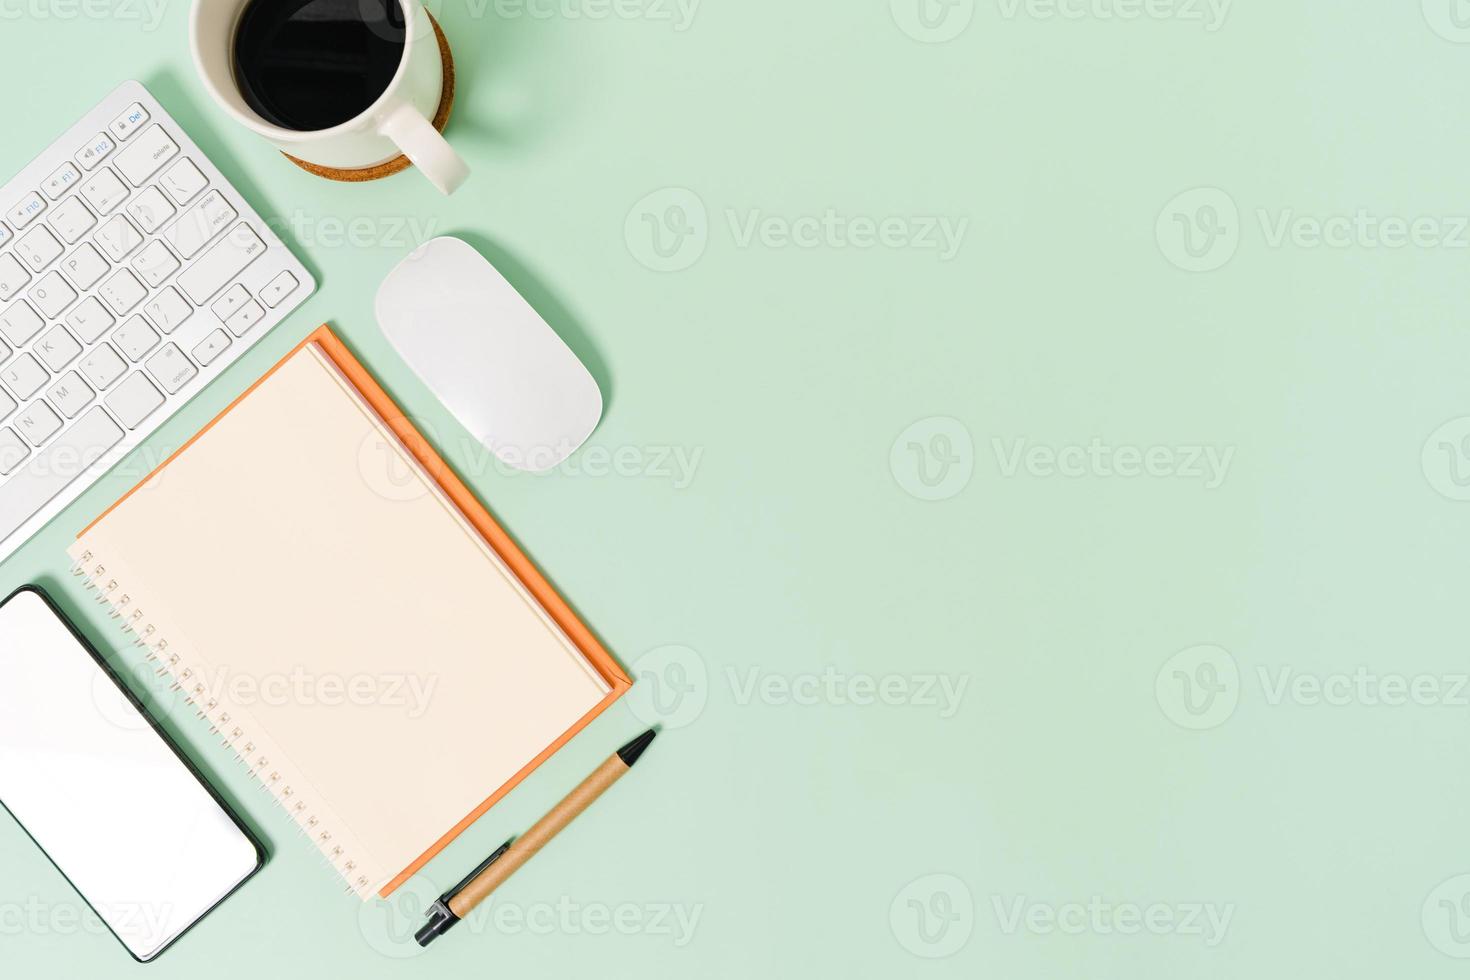 espacio de trabajo mínimo: foto creativa plana del escritorio del espacio de trabajo. escritorio de oficina de vista superior con teclado, mouse y cuaderno sobre fondo de color verde pastel. vista superior con espacio de copia, fotografía plana.